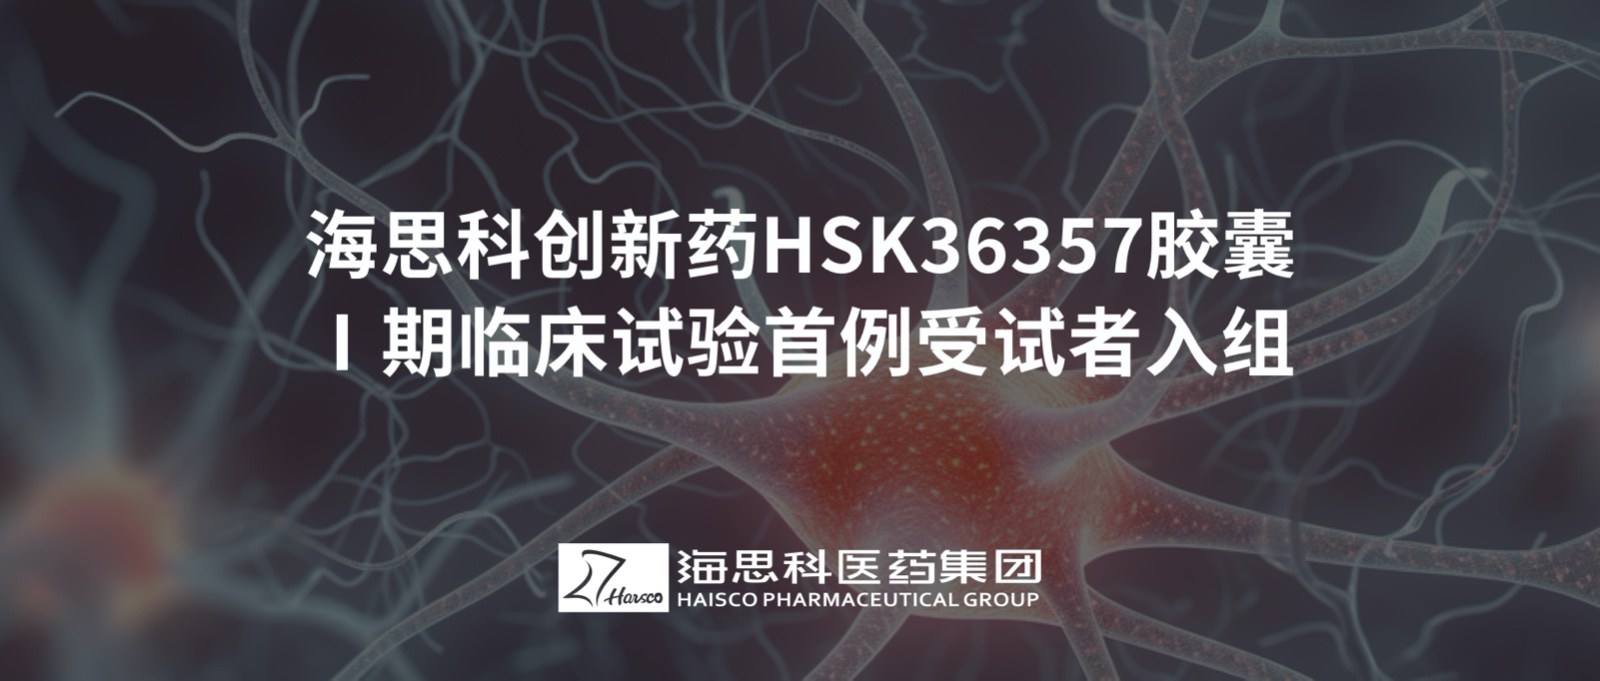 乐鱼官网大巴黎赞助商创新药HSK36357胶囊Ⅰ期临床试验首例受试者入组